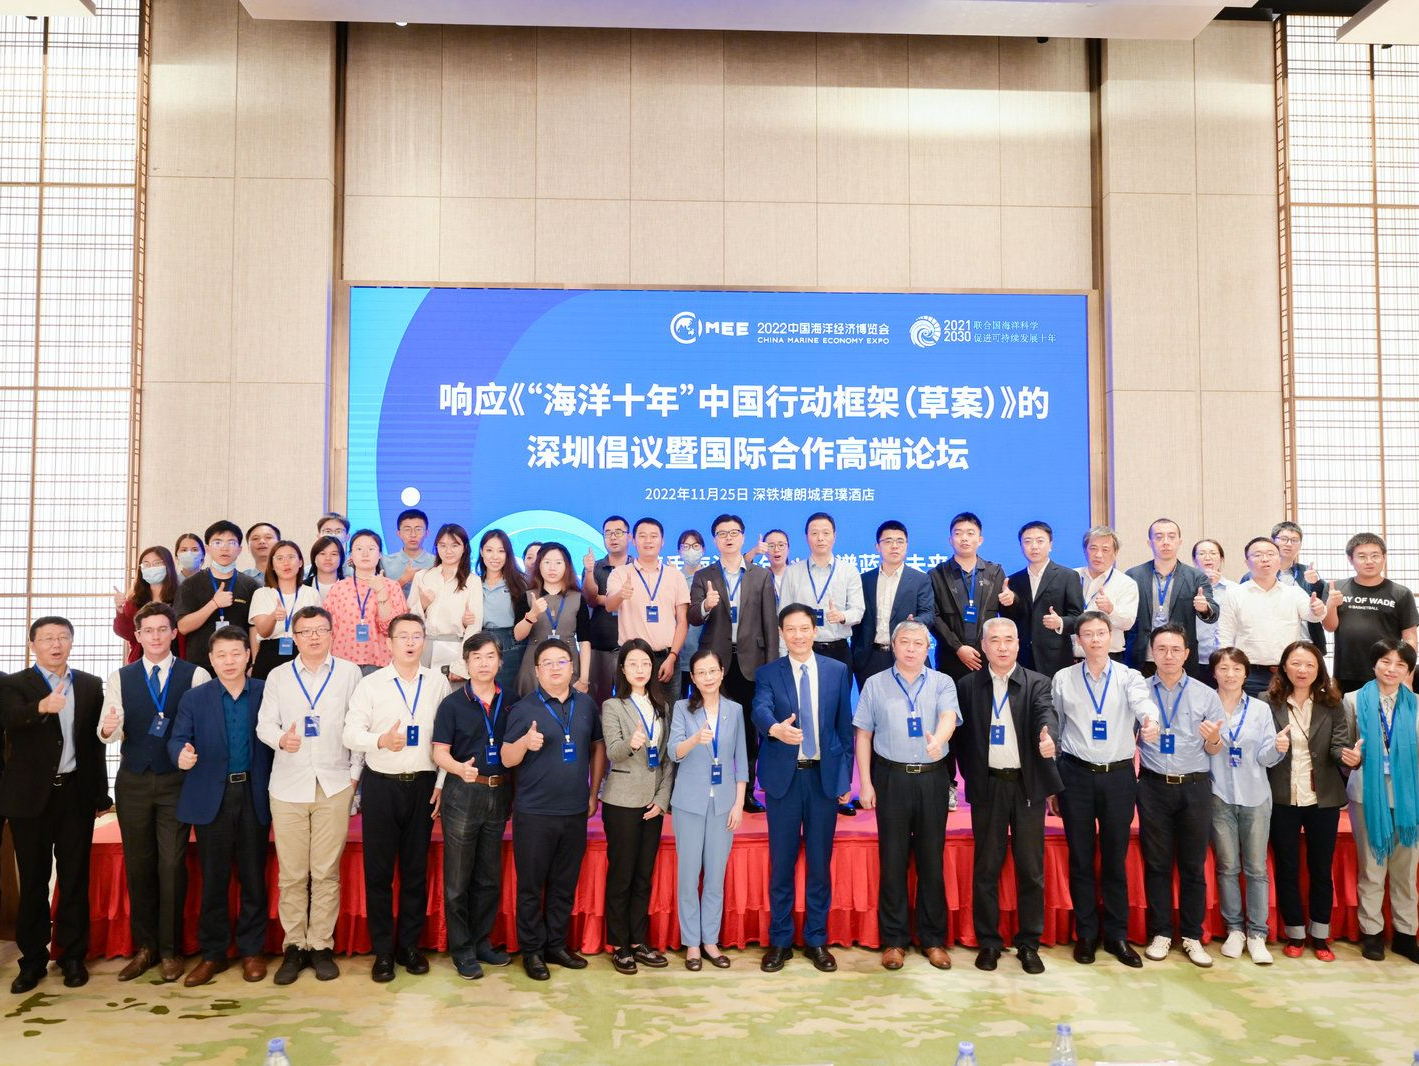  “海洋十年”深圳倡议暨国际合作高端论坛举行